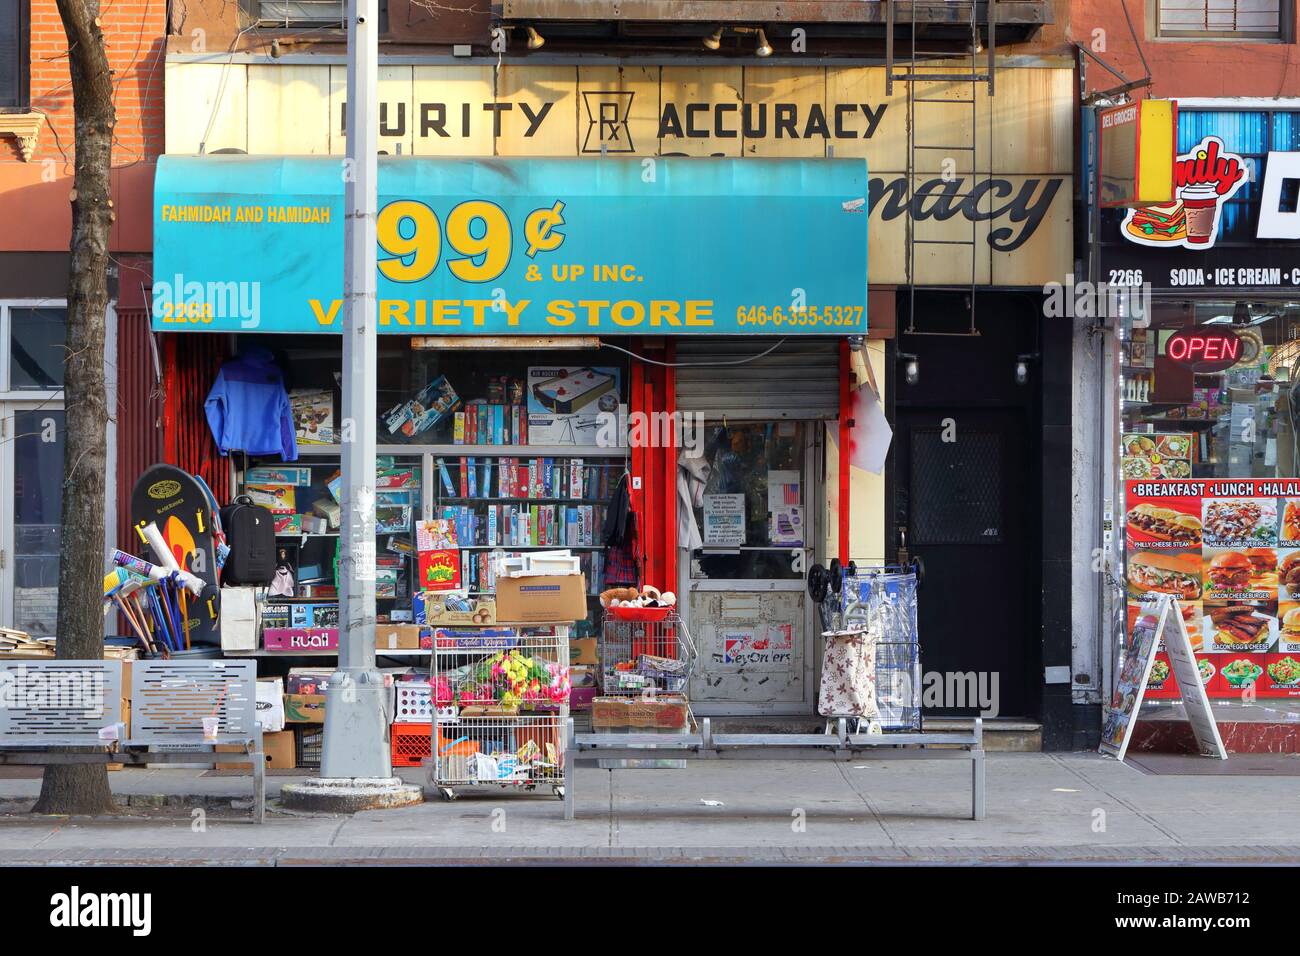 Schaufenster eines 99Cent Variety Store im spanischen Harlem, New York, New York. Stockfoto